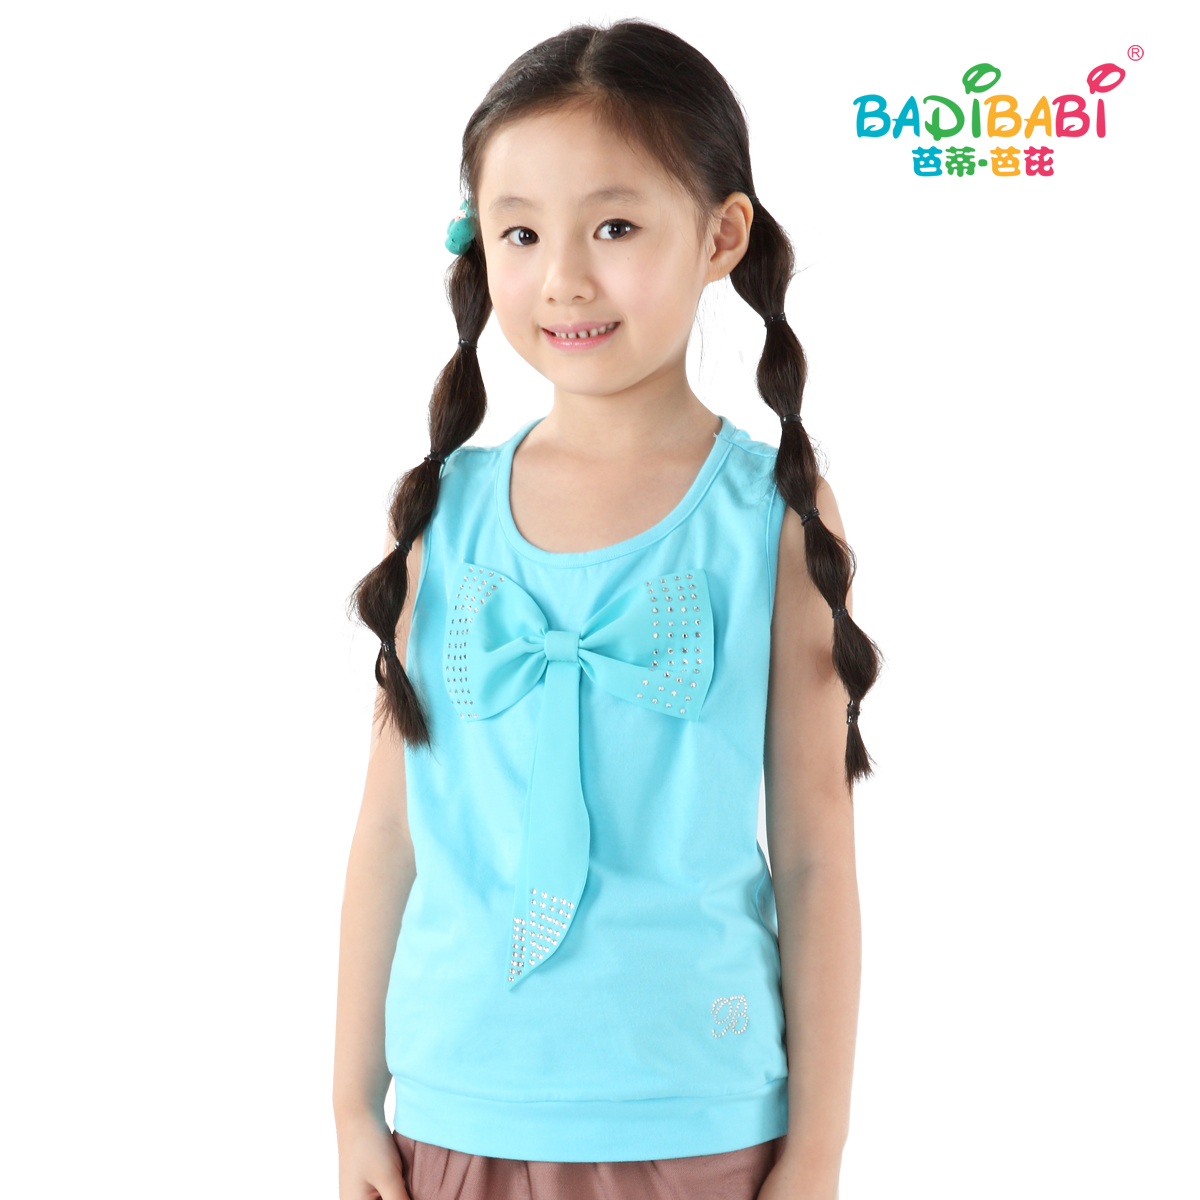 Children's clothing female child summer o-neck sleeveless 2012 all-match T-shirt child vest blue